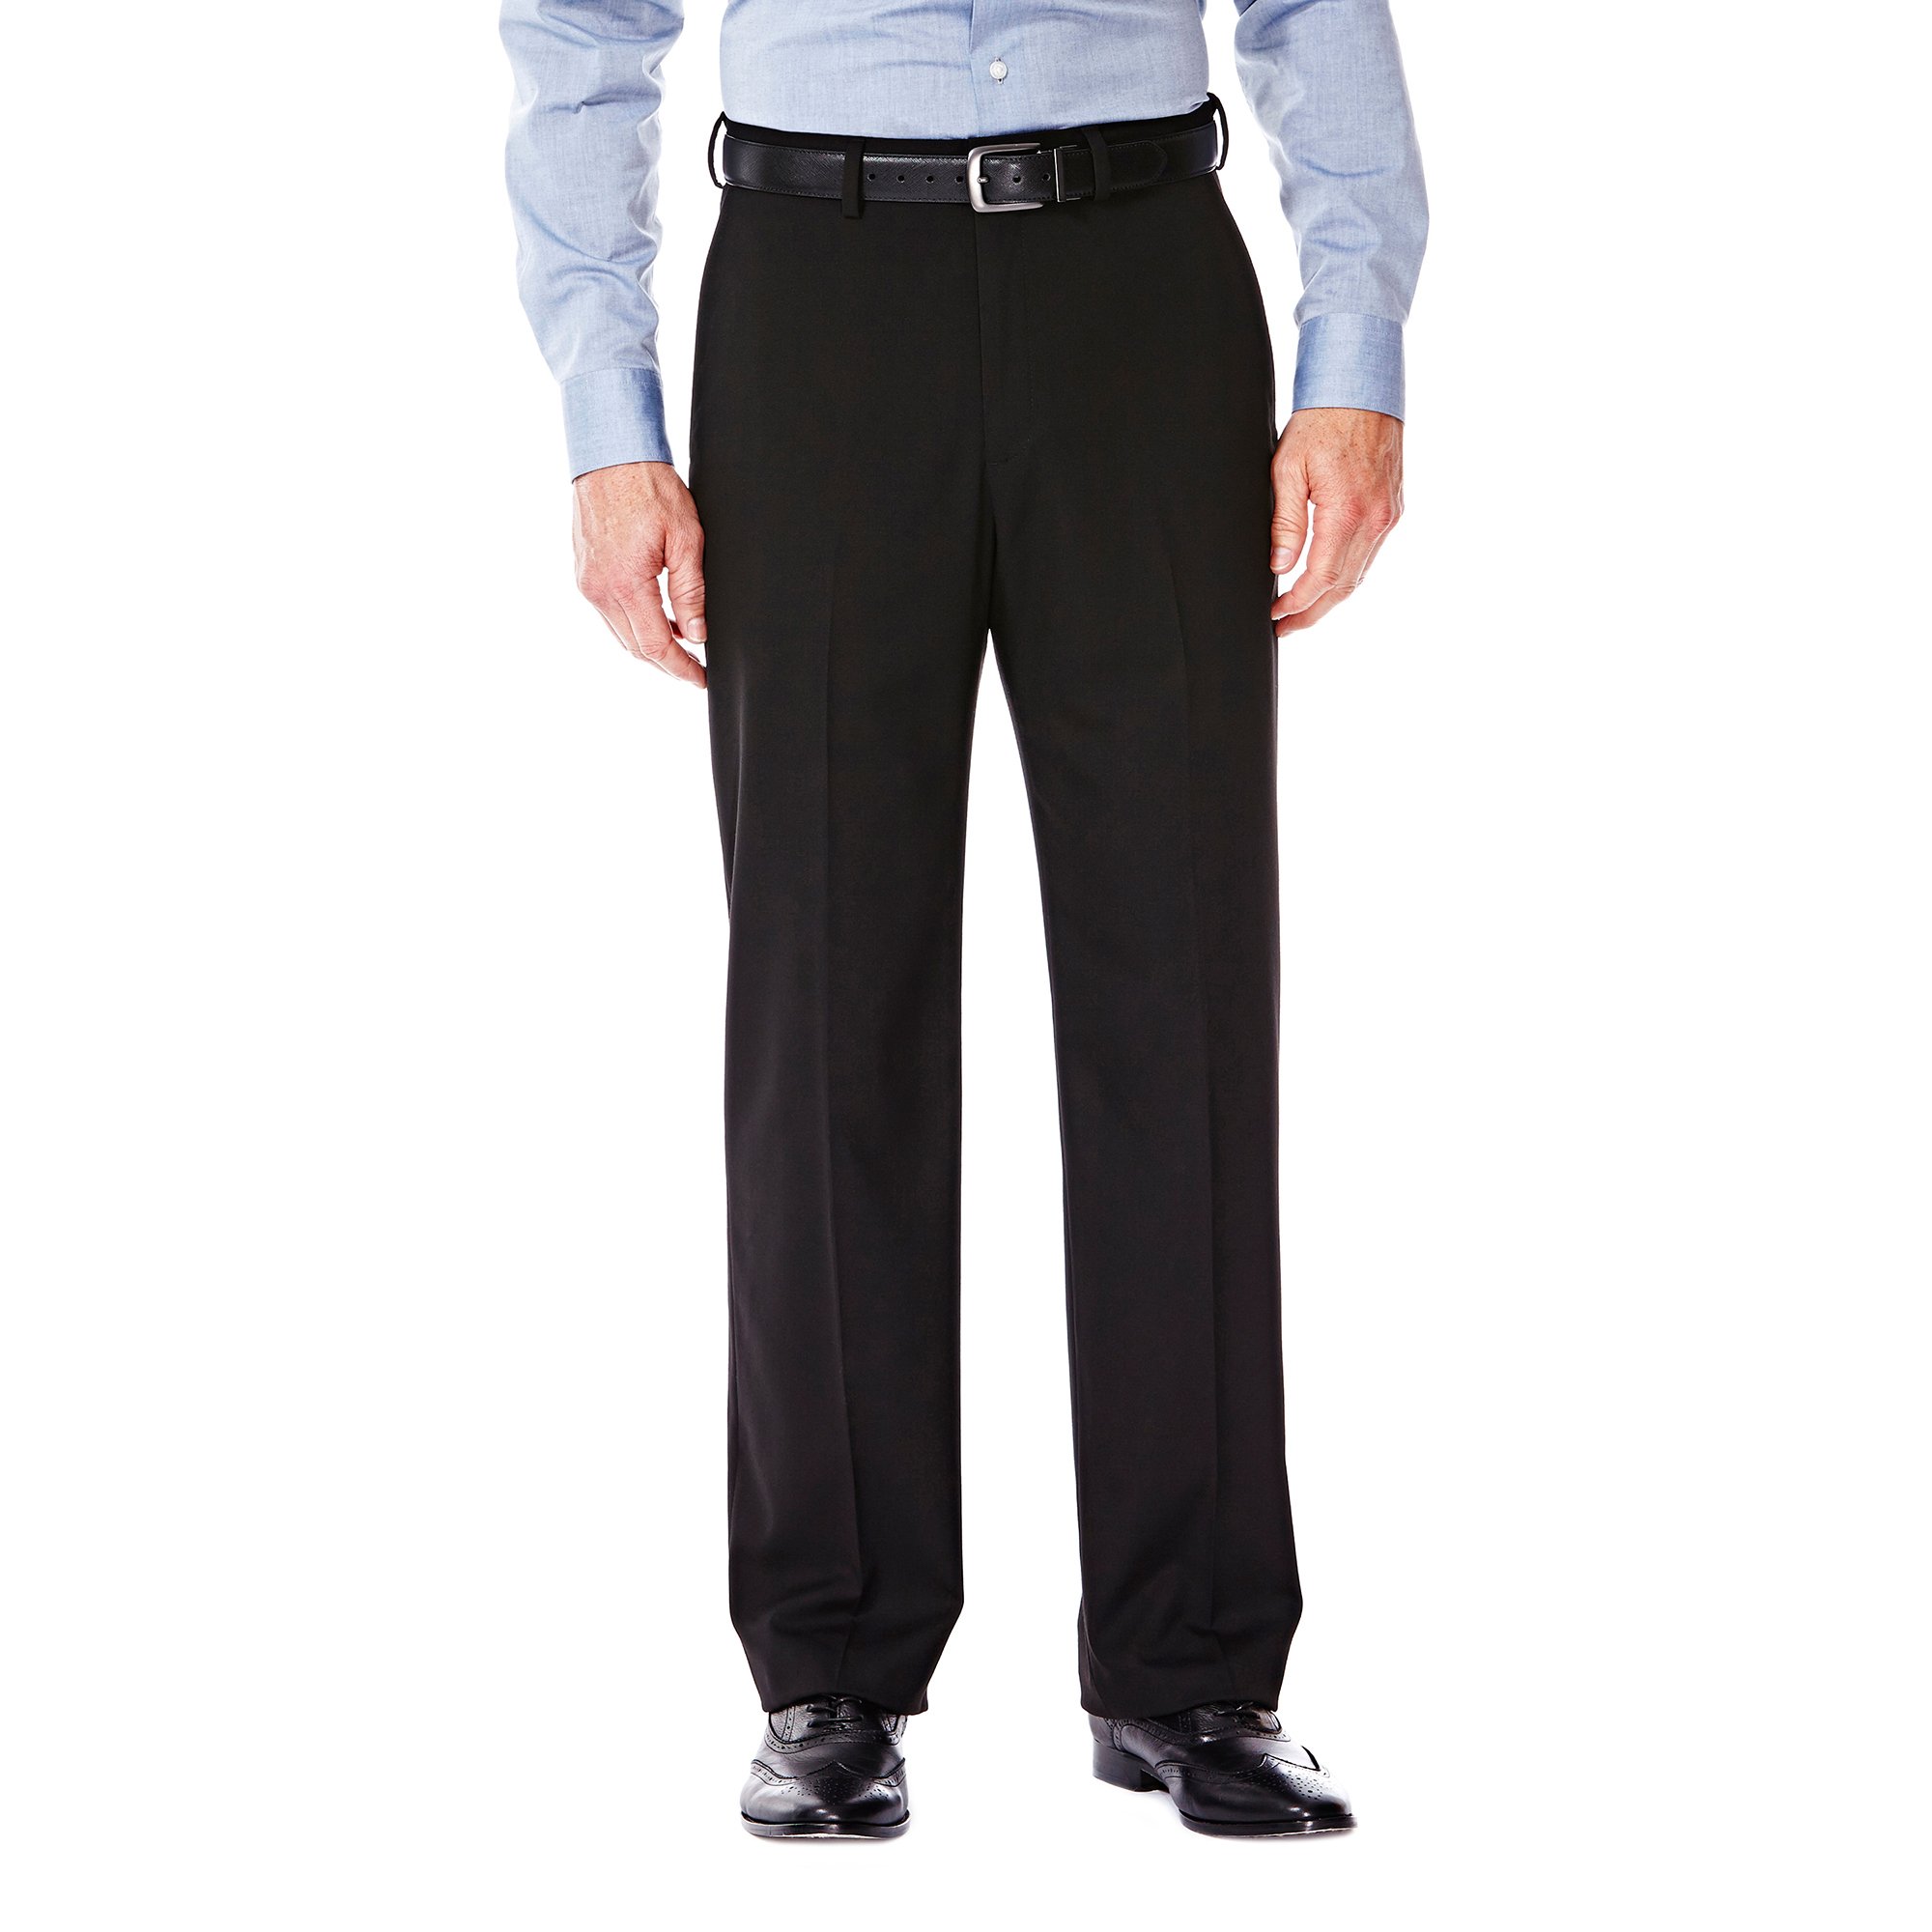 Pantalon de survêtement stretch de qualité supérieure pour homme Devant plat Haggar J.M